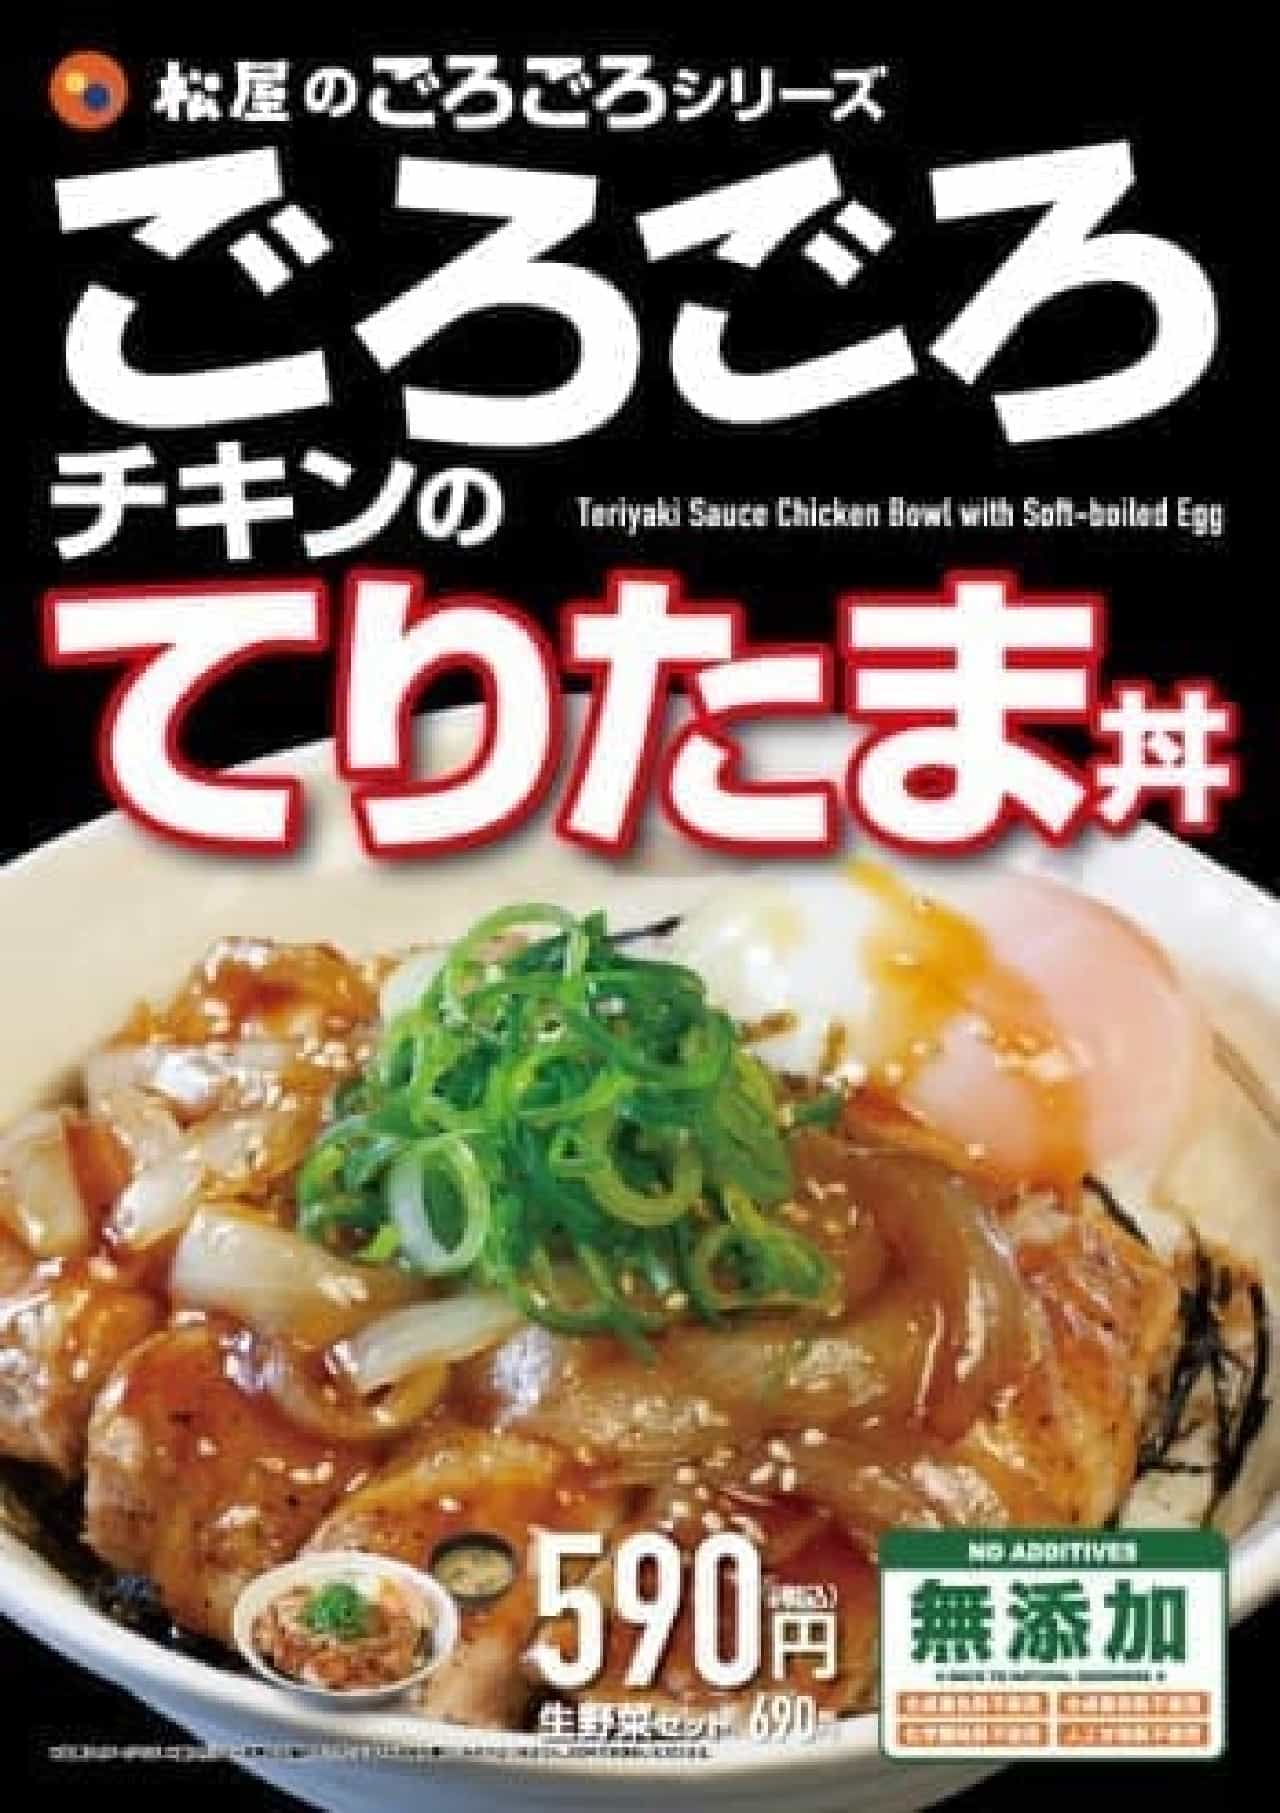 Matsuya "Chicken Teritama Don"